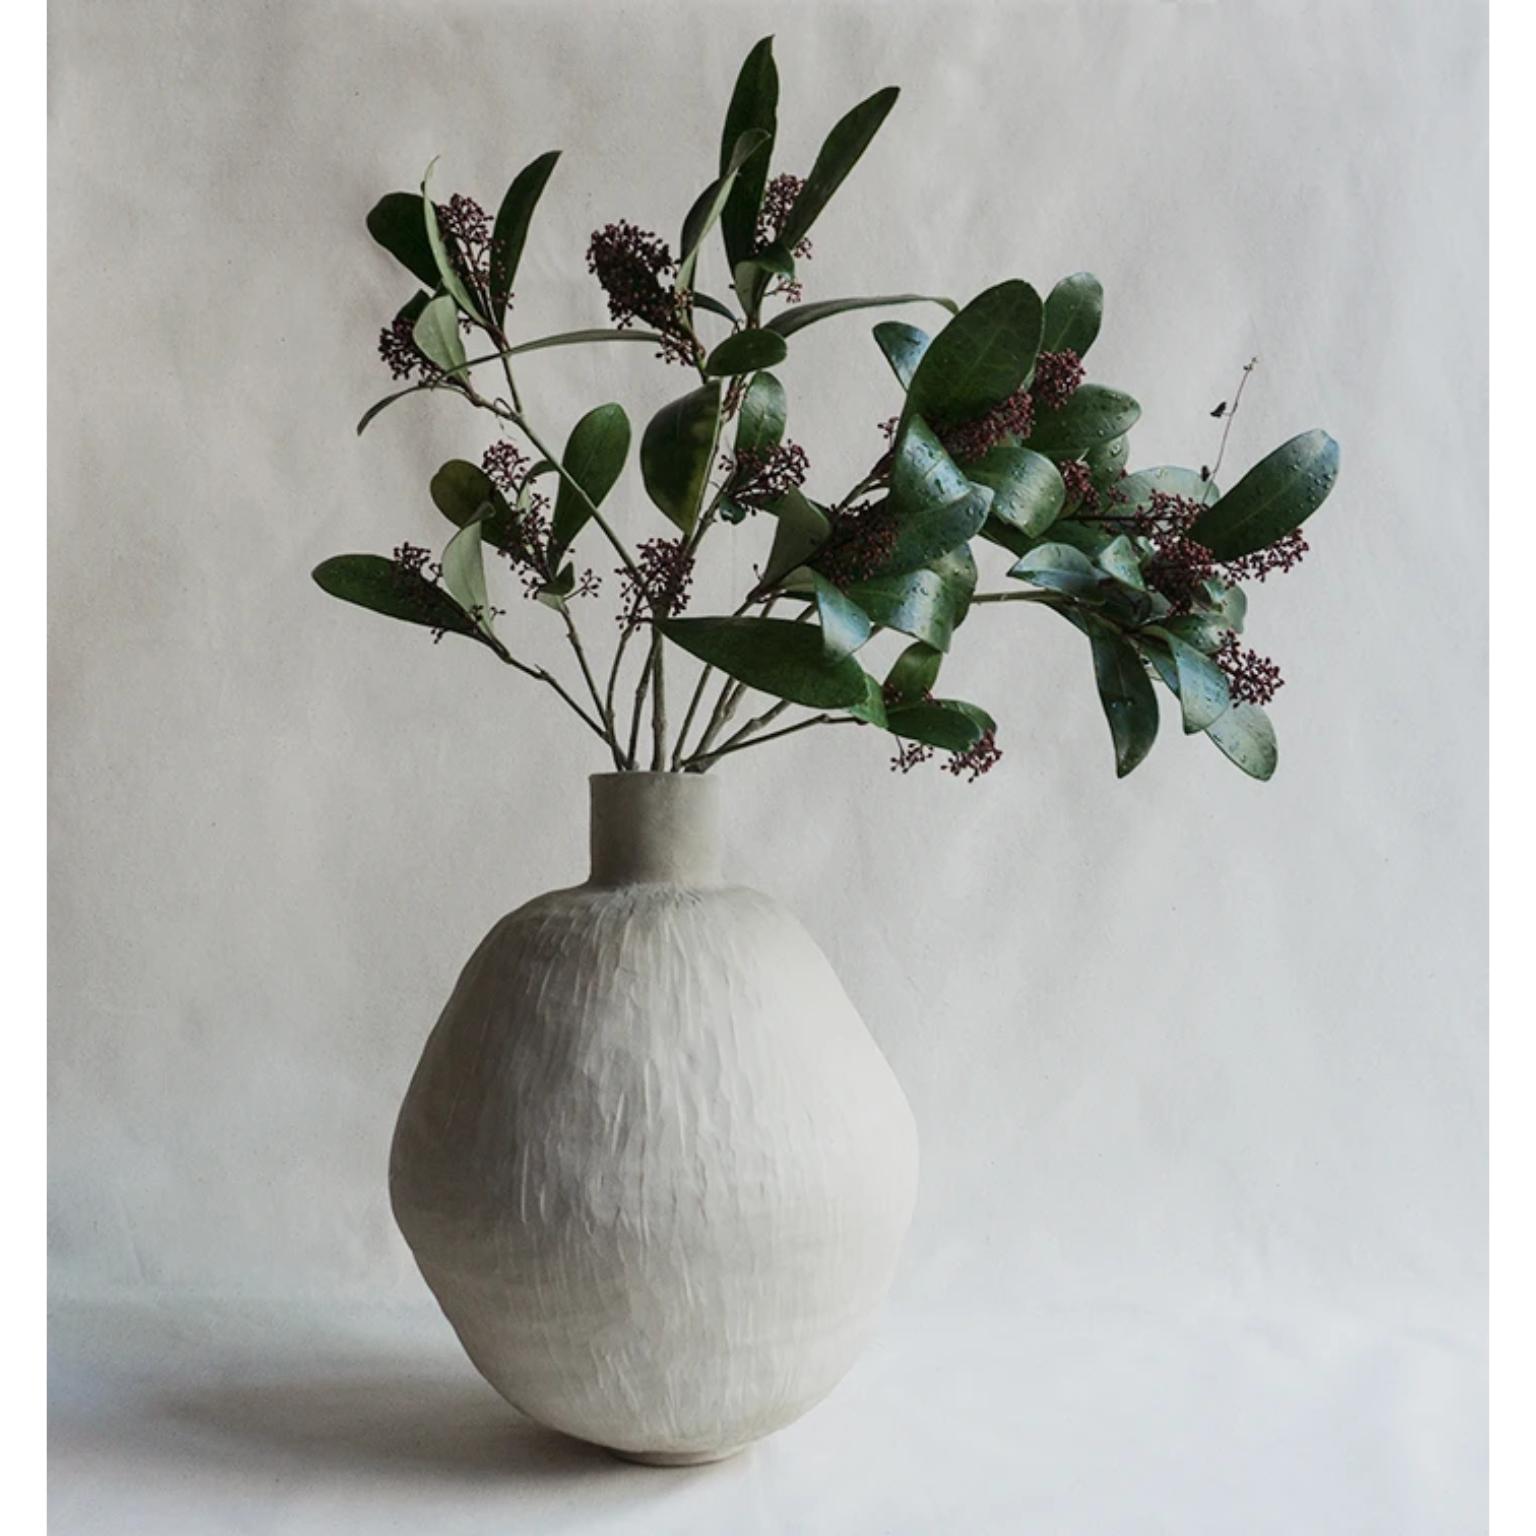 Vase Viola Alba de Cosmin Florea
Pièce unique
Dimensions : D 26 x H 32 cm
Matériaux : Grès cérame

Inspiré par mon amour pour la nature vierge, ce vase sculptural prend la forme d'une colombe.
Fabriqué à la main en grès blanc, le vase Dove peut être